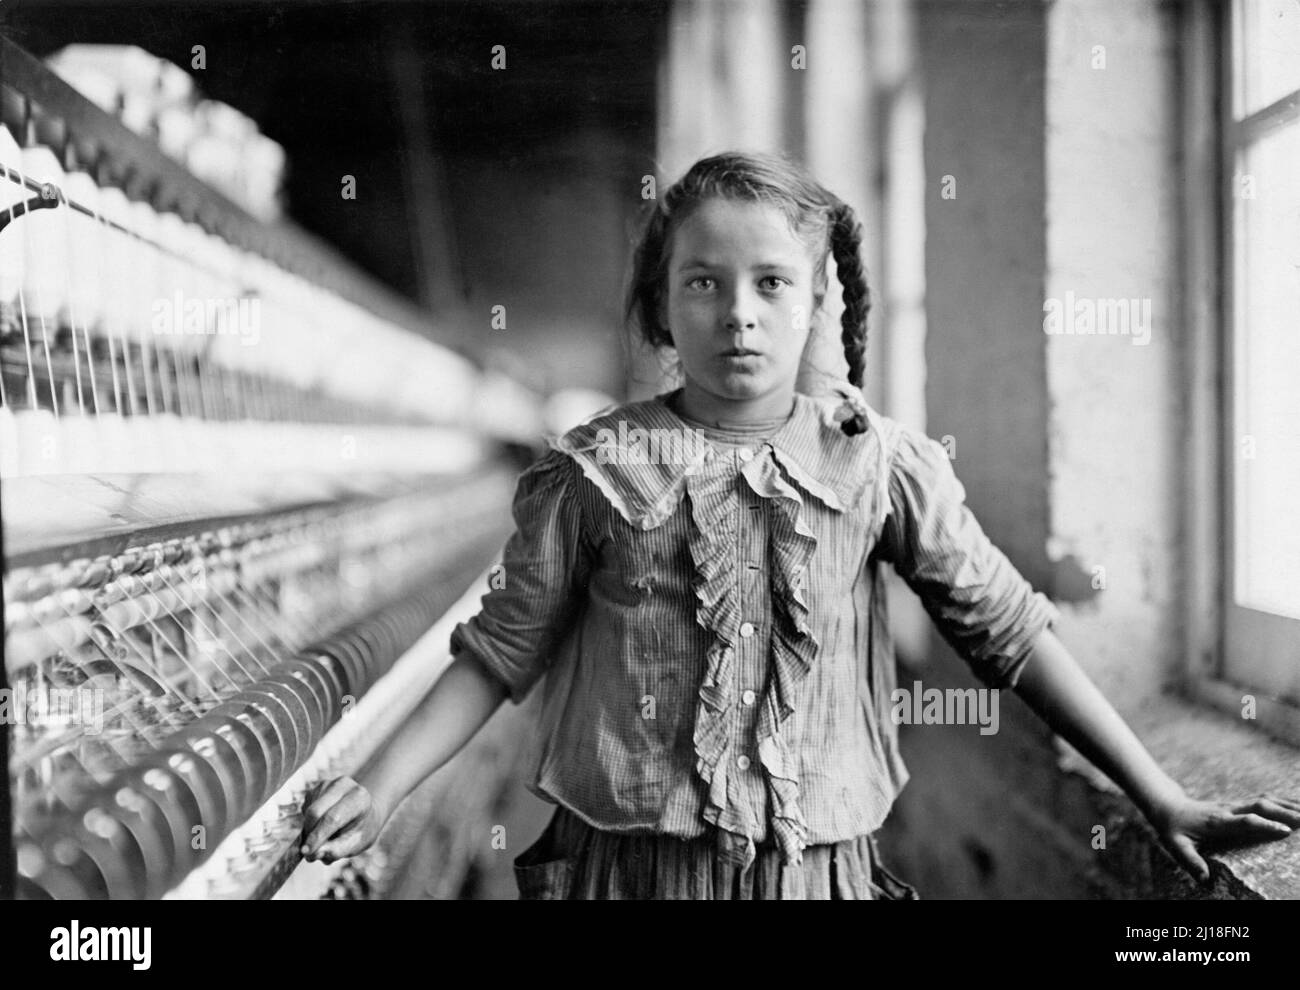 Cotton-Mill Worker, North Carolina von Lewis Hine (1874-1940), 1908. Das Foto zeigt ein junges Mädchen von zwölf oder dreizehn Jahren, das in einer Baumwollfabrik als Kinderarbeit arbeitet. Stockfoto